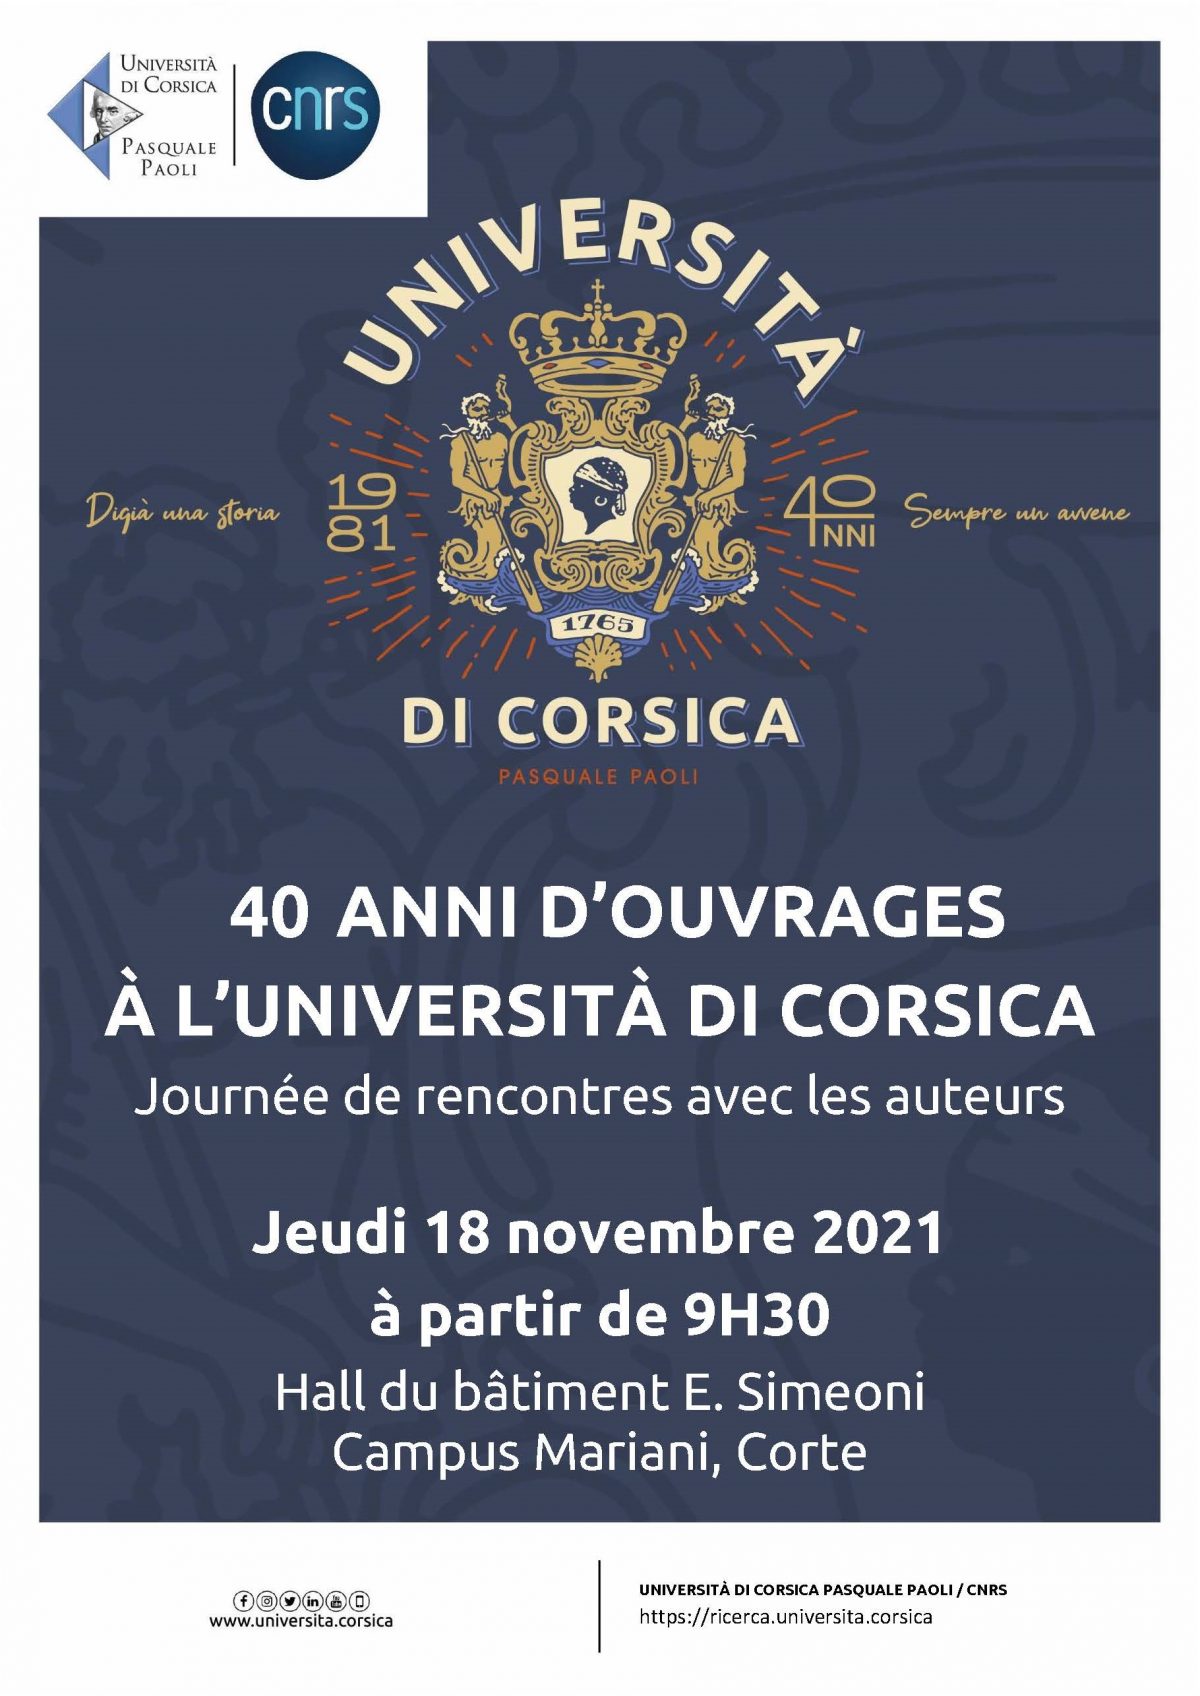 Journée de rencontres « 40 ans d’ouvrages scientifiques à l’Università di Corsica »